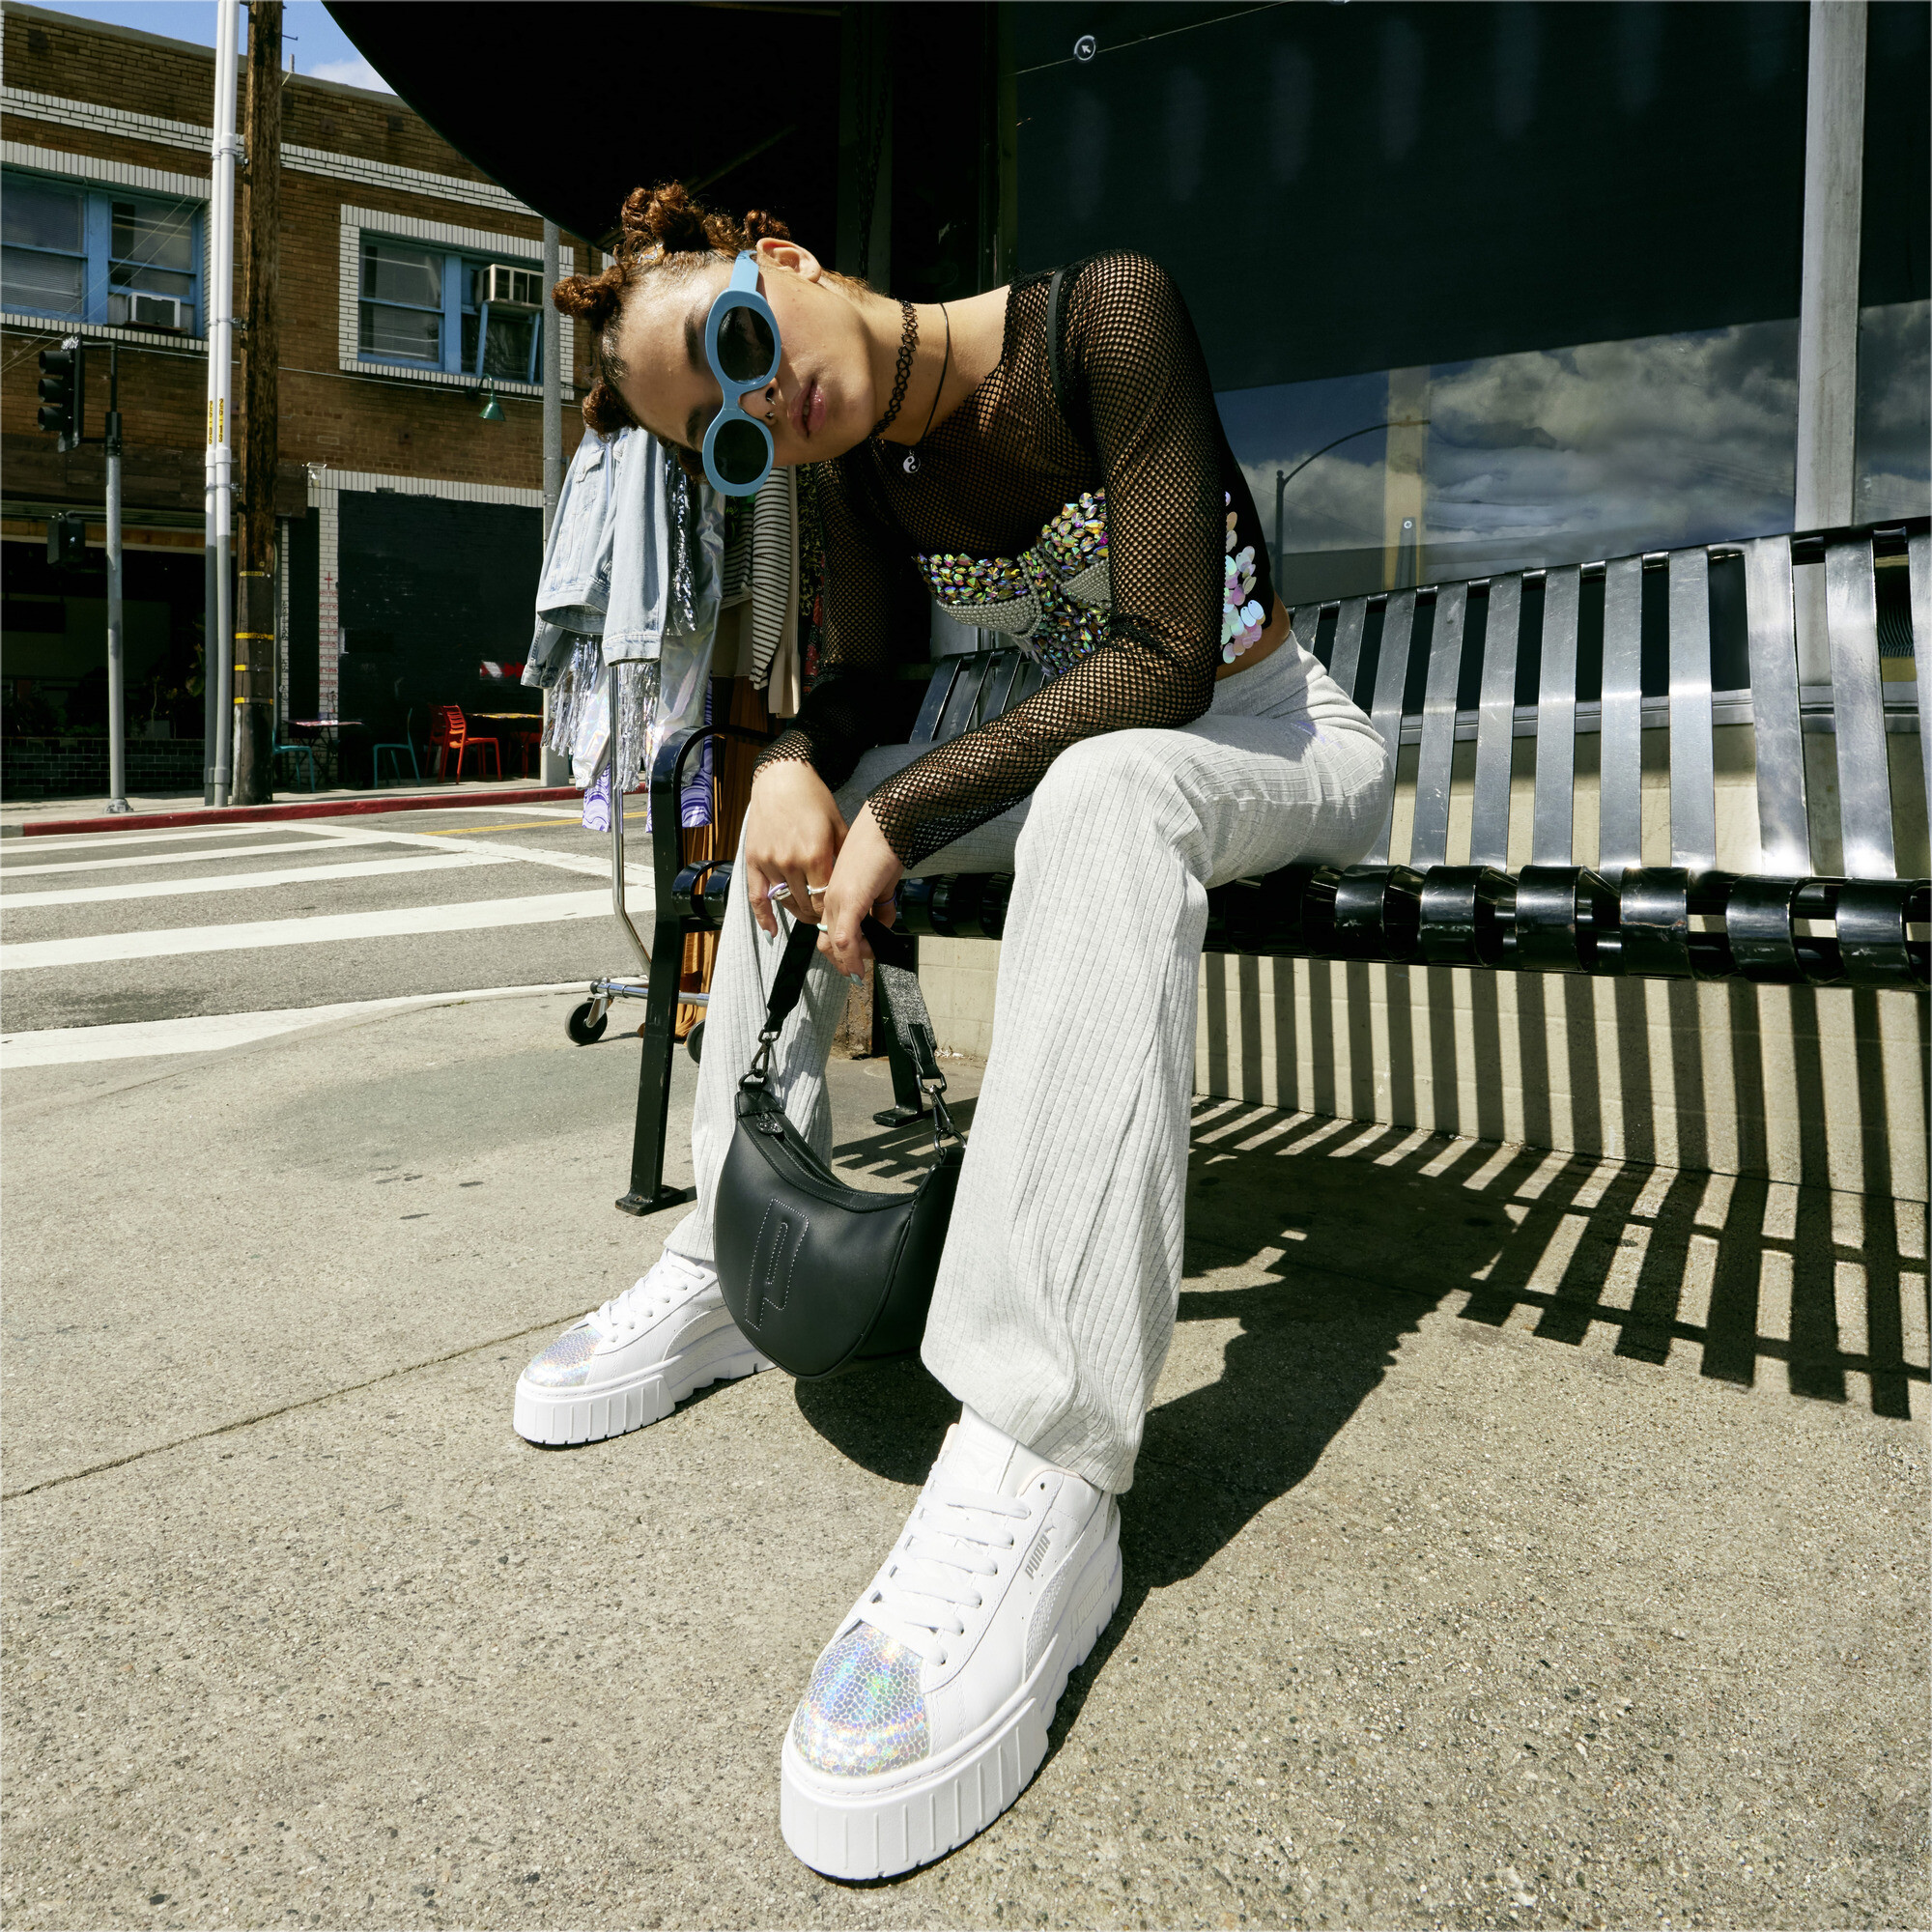 Women's PUMA Mayze Tomorrowland Fashion Sneakers Women In White, Size EU 38